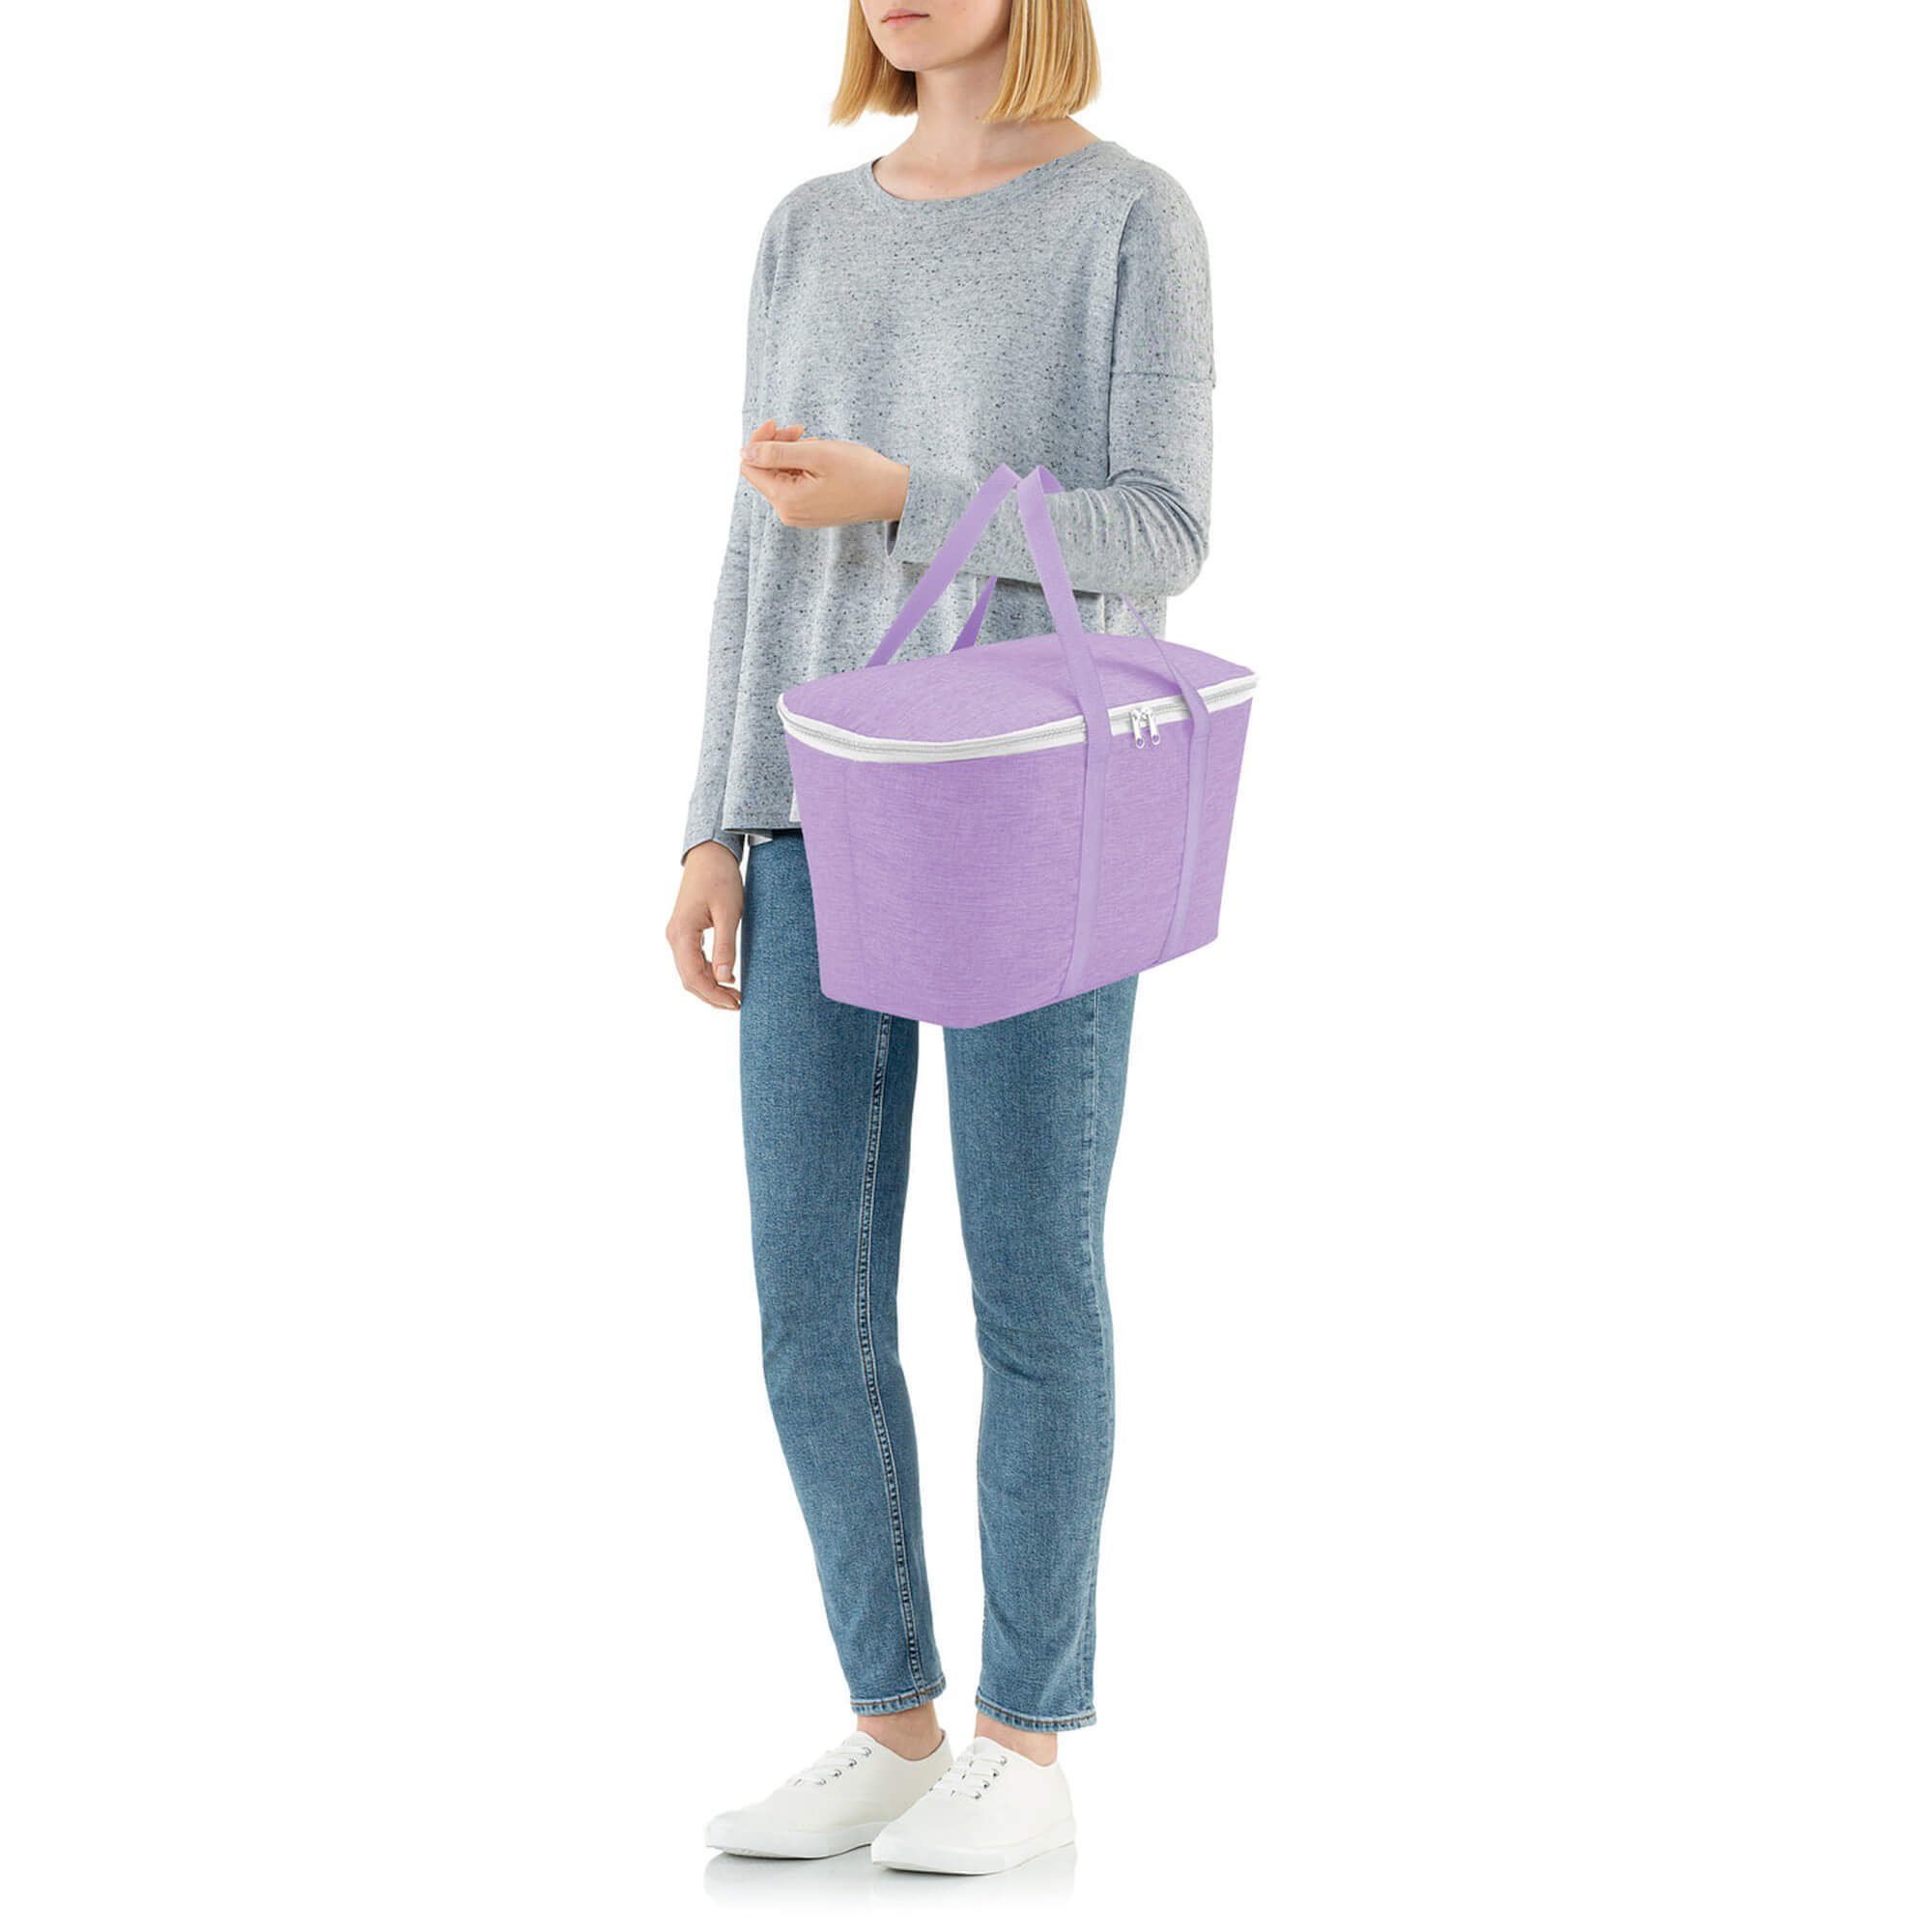 REISENTHEL® Einkaufsbeutel thermo coolerbag - l twist 44.5 20 Kühltasche violet cm